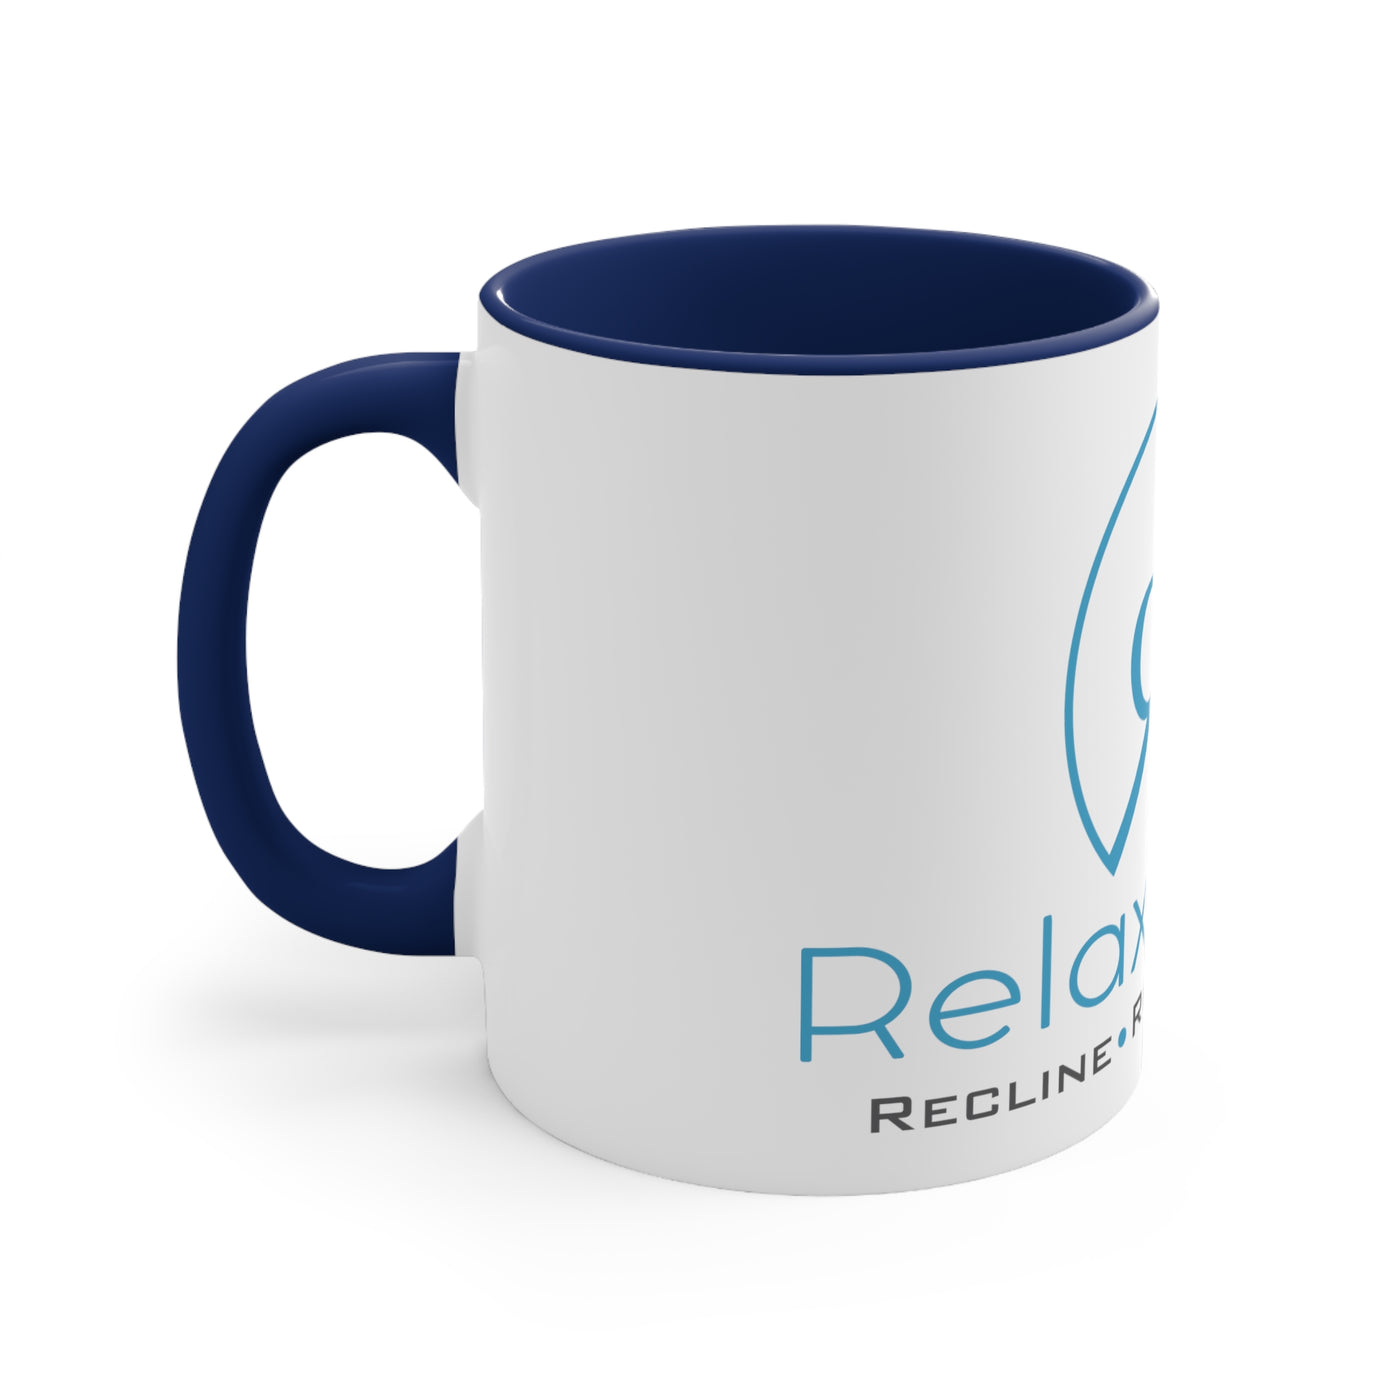 Relax Room Coffee Mug, 11oz